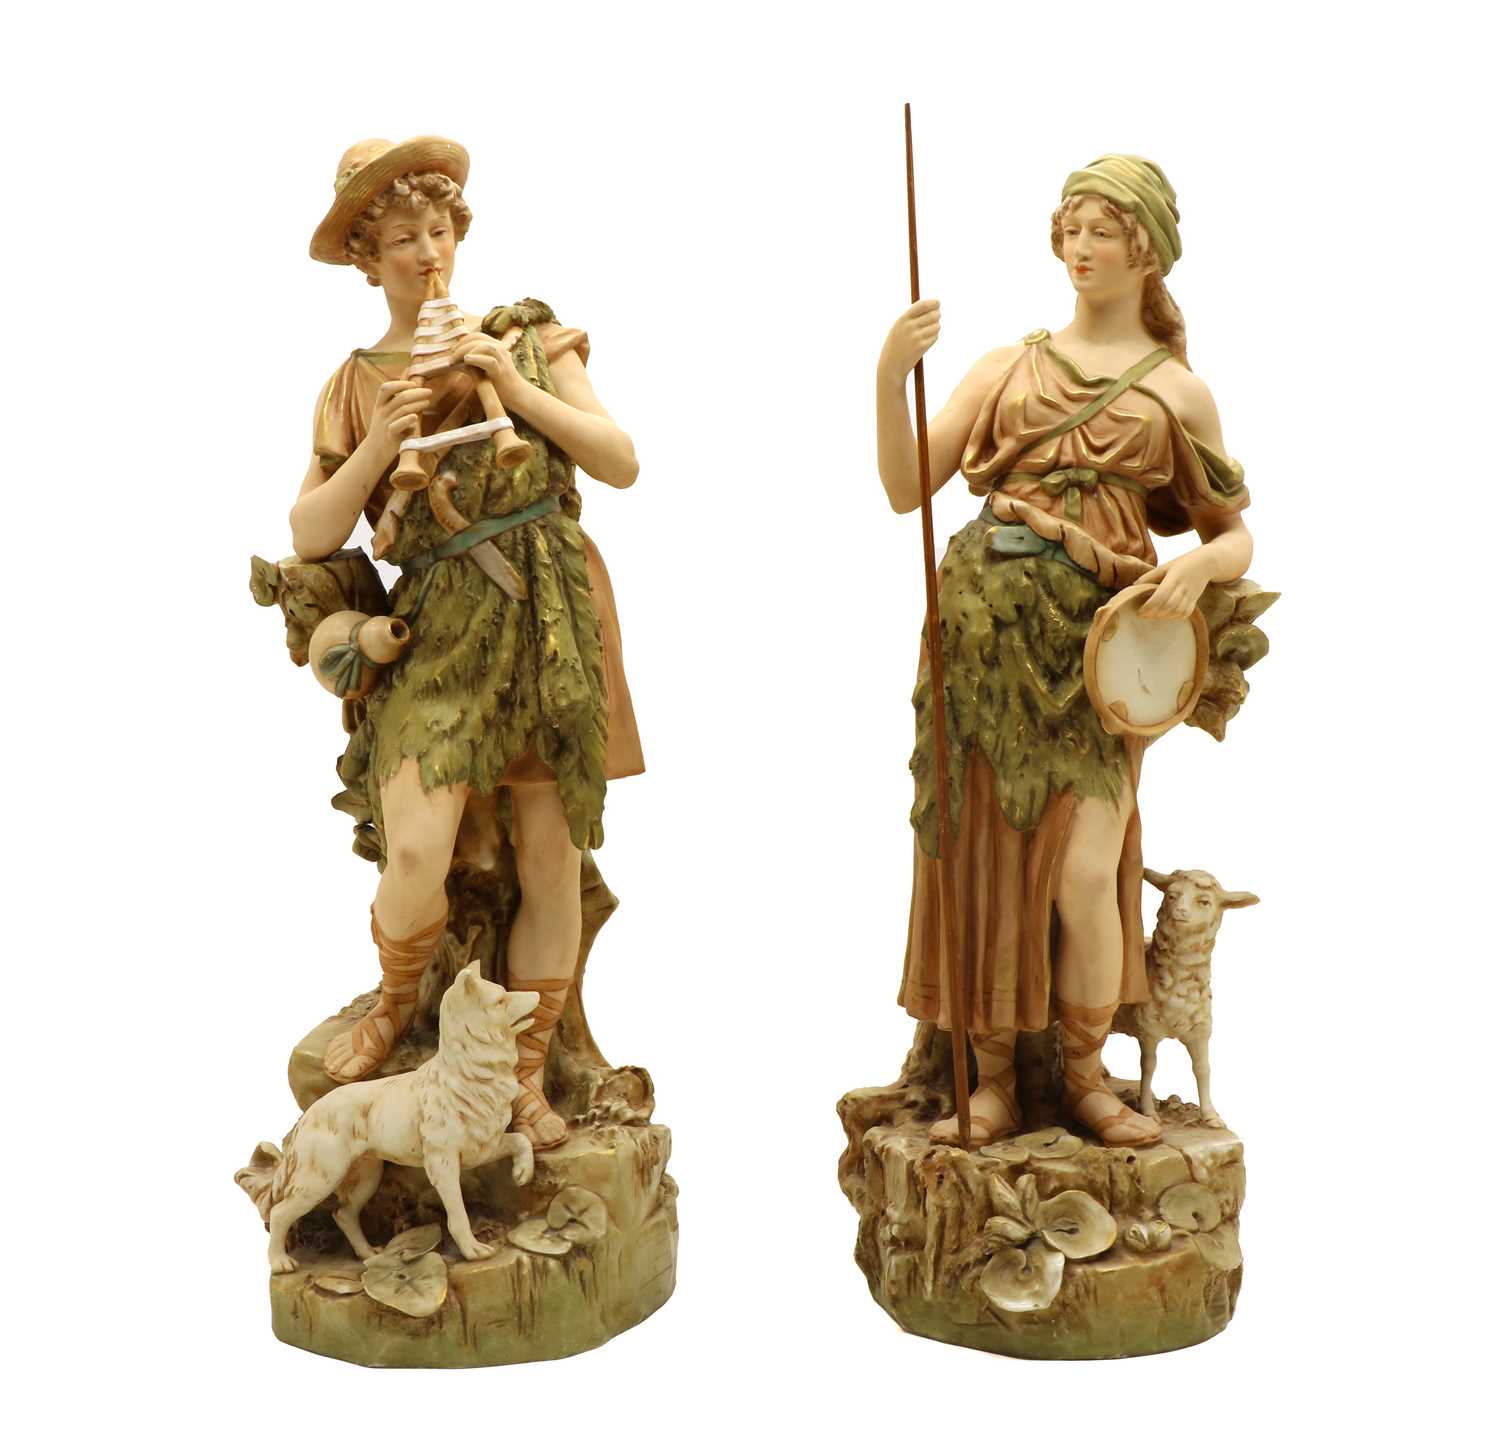 Lot 65 - A large pair of Royal Dux porcelain figures